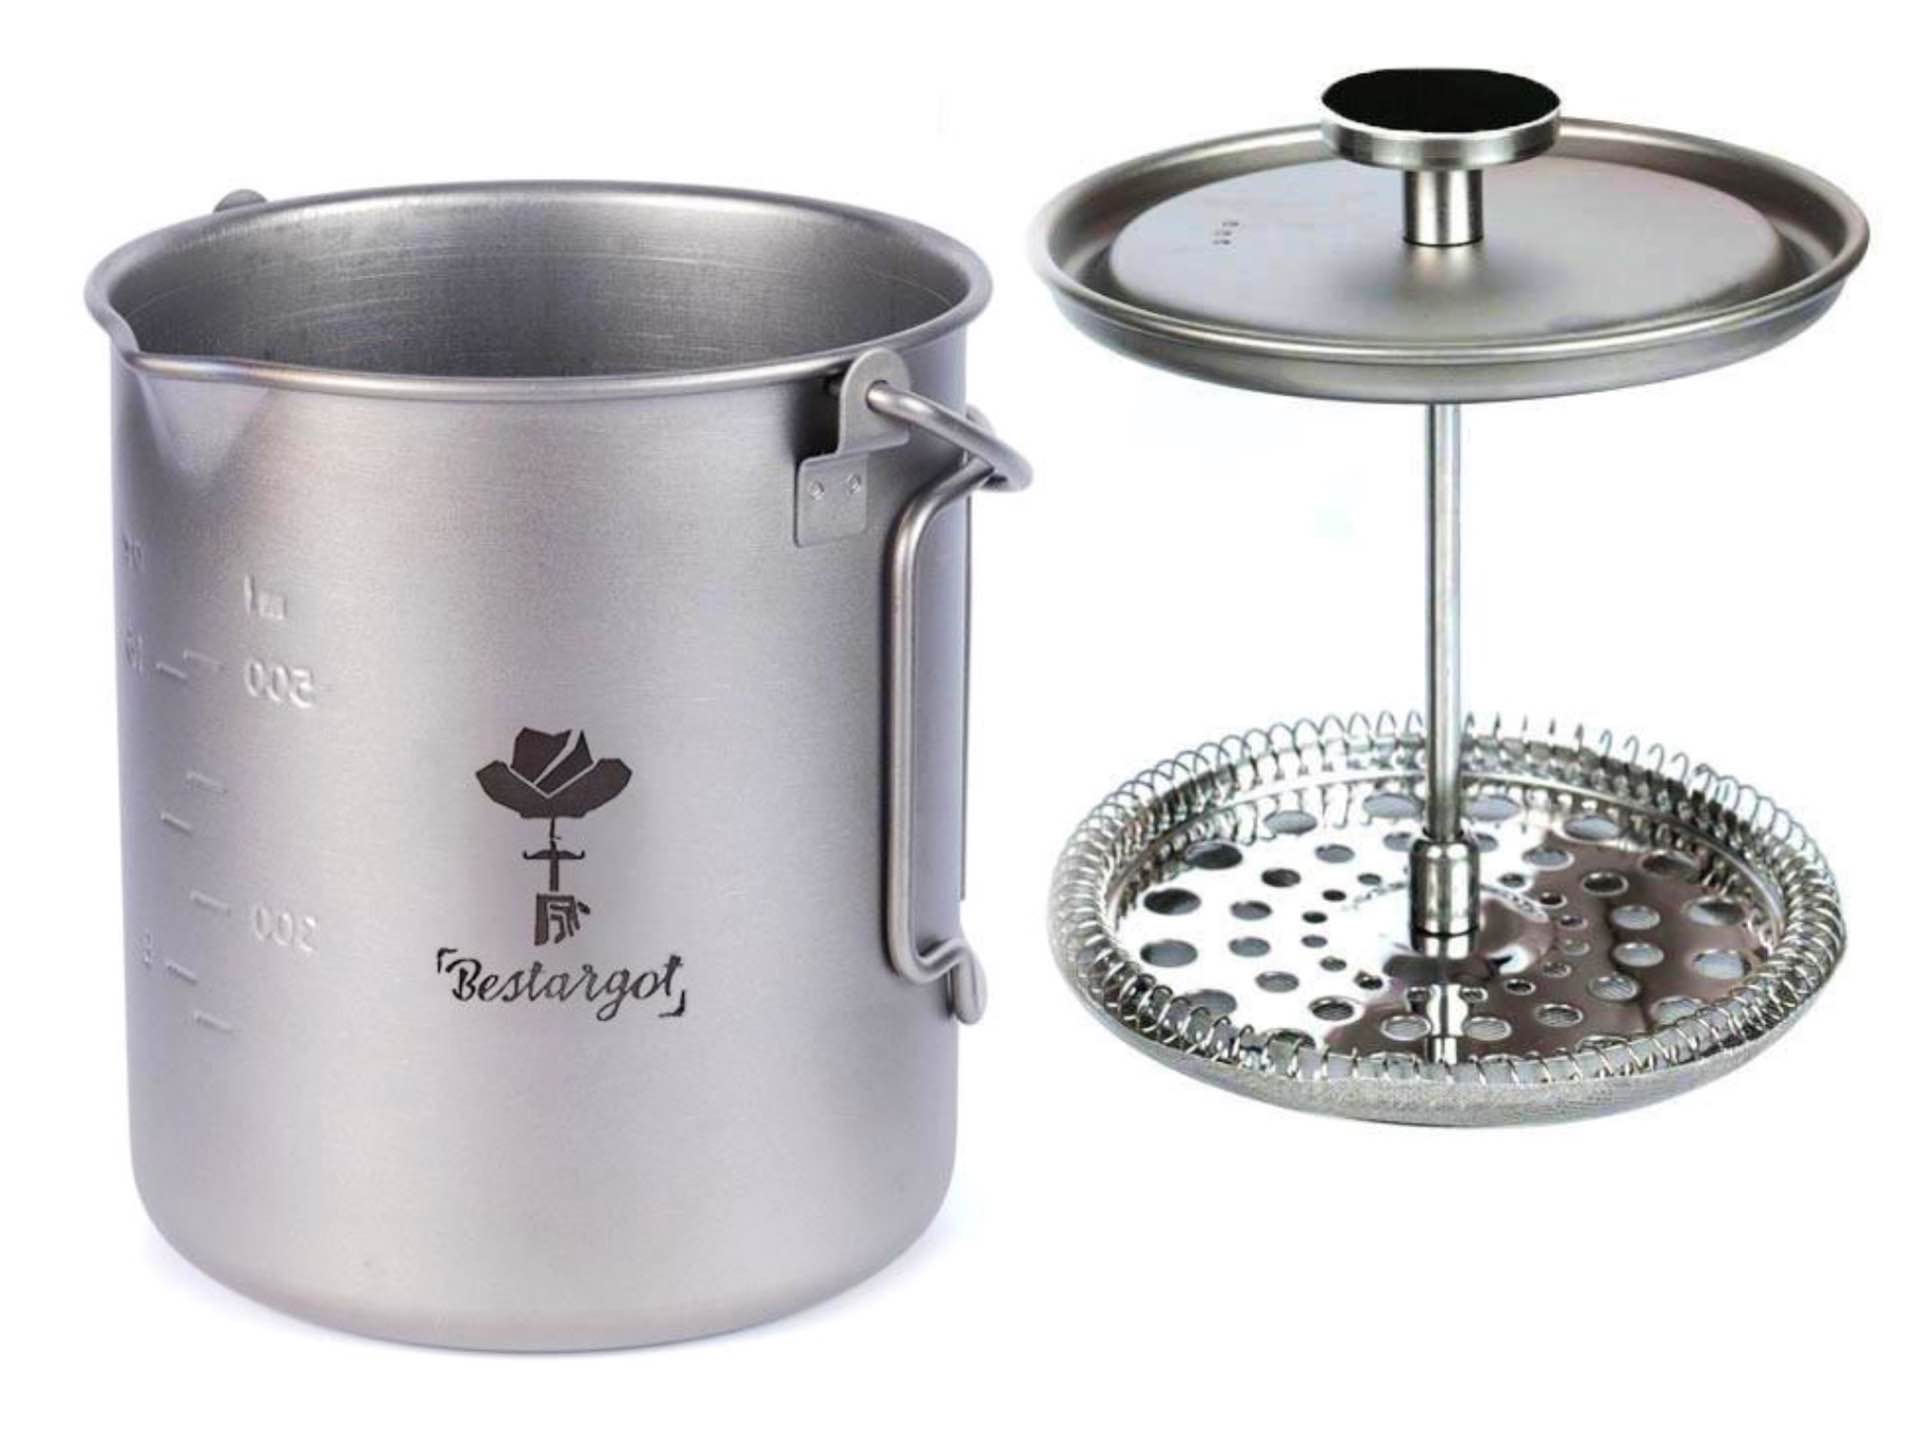 Bestargot titanium French press + camp mug + outdoor cookpot. ($38)